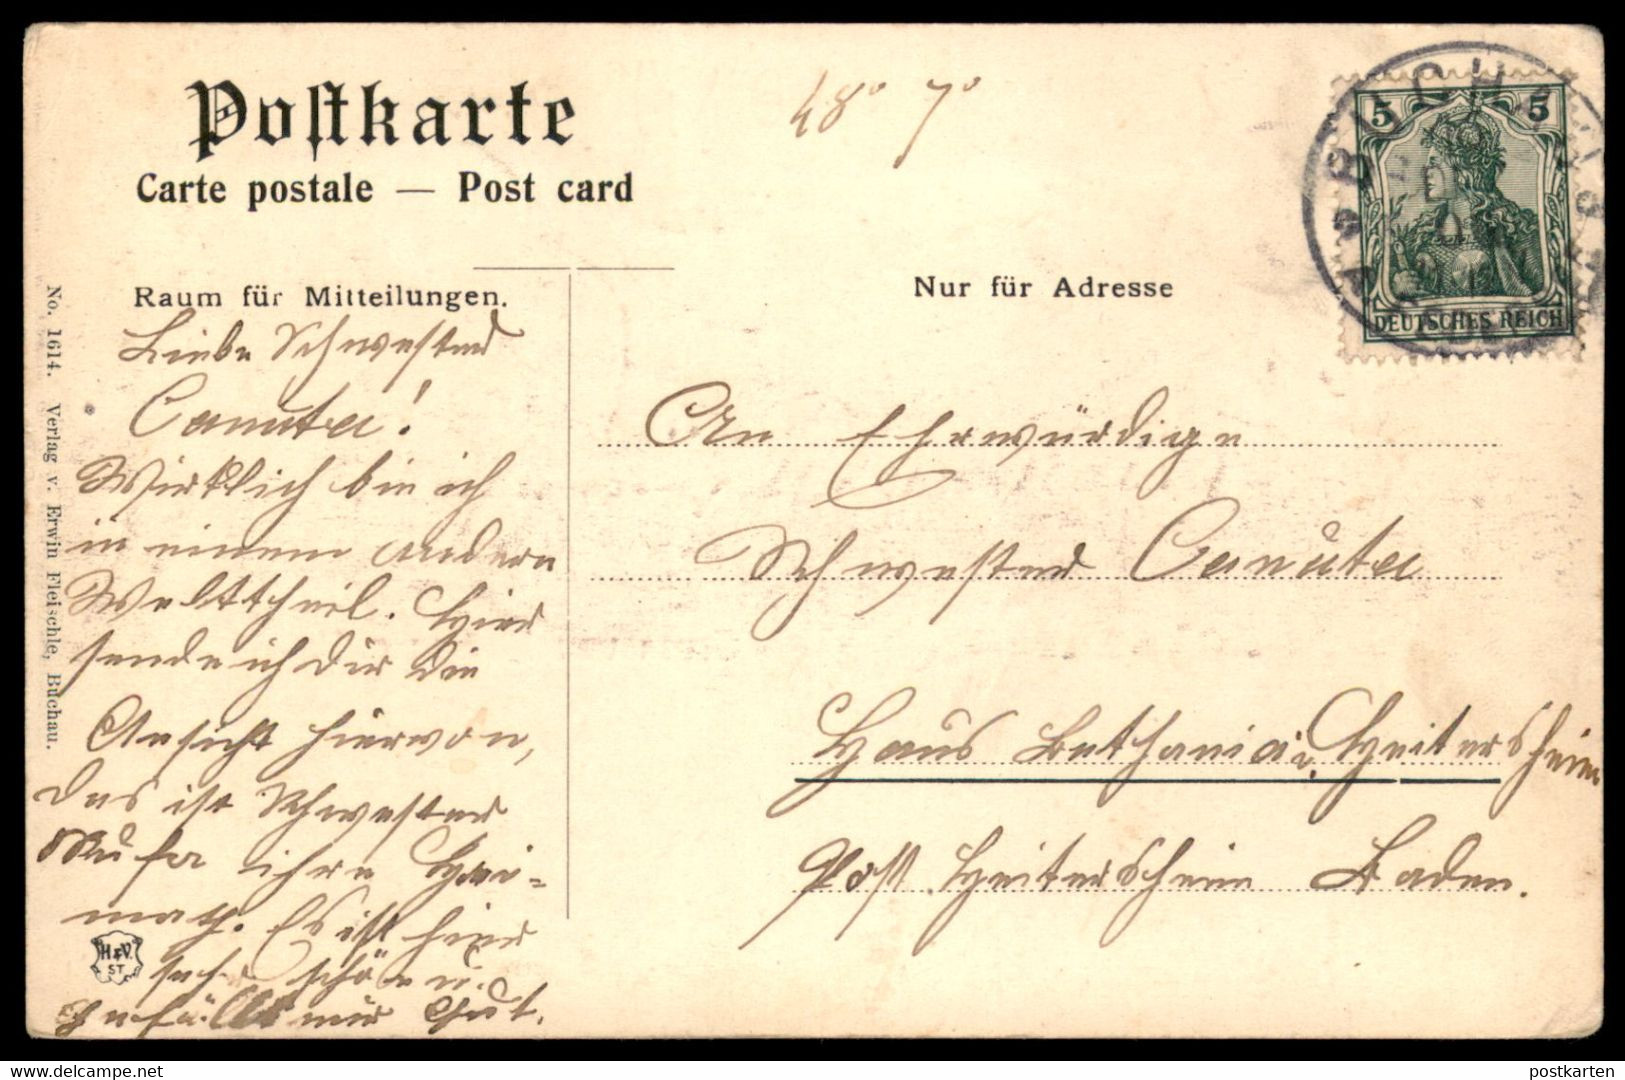 ALTE POSTKARTE GRUSS VON BUCHAU AM FEDERSEE ELEKTRIZITÄTSWERK 1906 Ansichtskarte AK Postcard Cpa - Bad Buchau